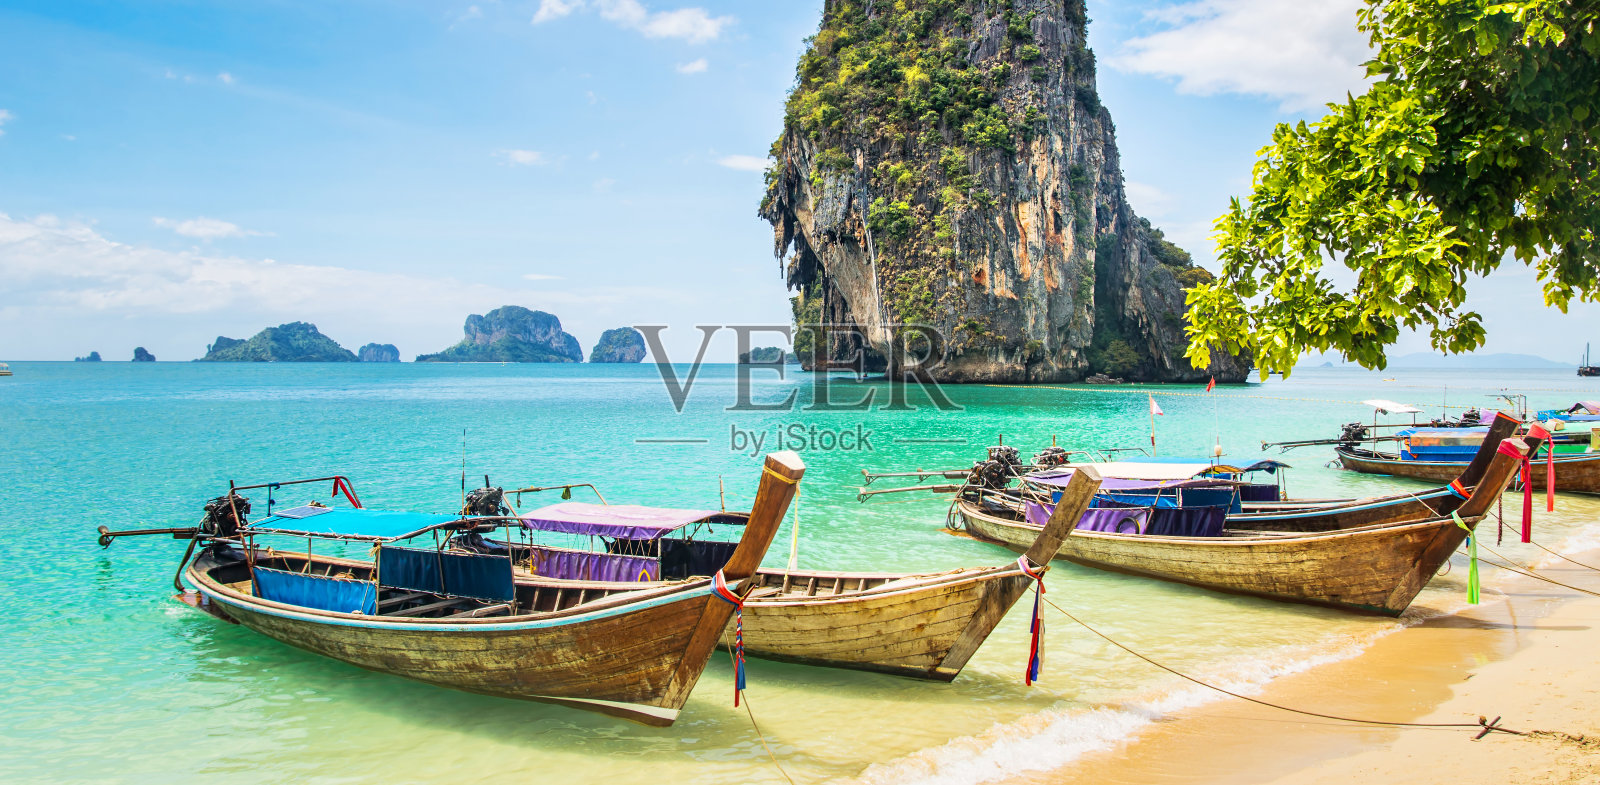 令人惊叹的美丽海滩和长尾船。地点:泰国甲米，雷莱海滩，安达曼海。艺术照片。美丽的世界。全景照片摄影图片